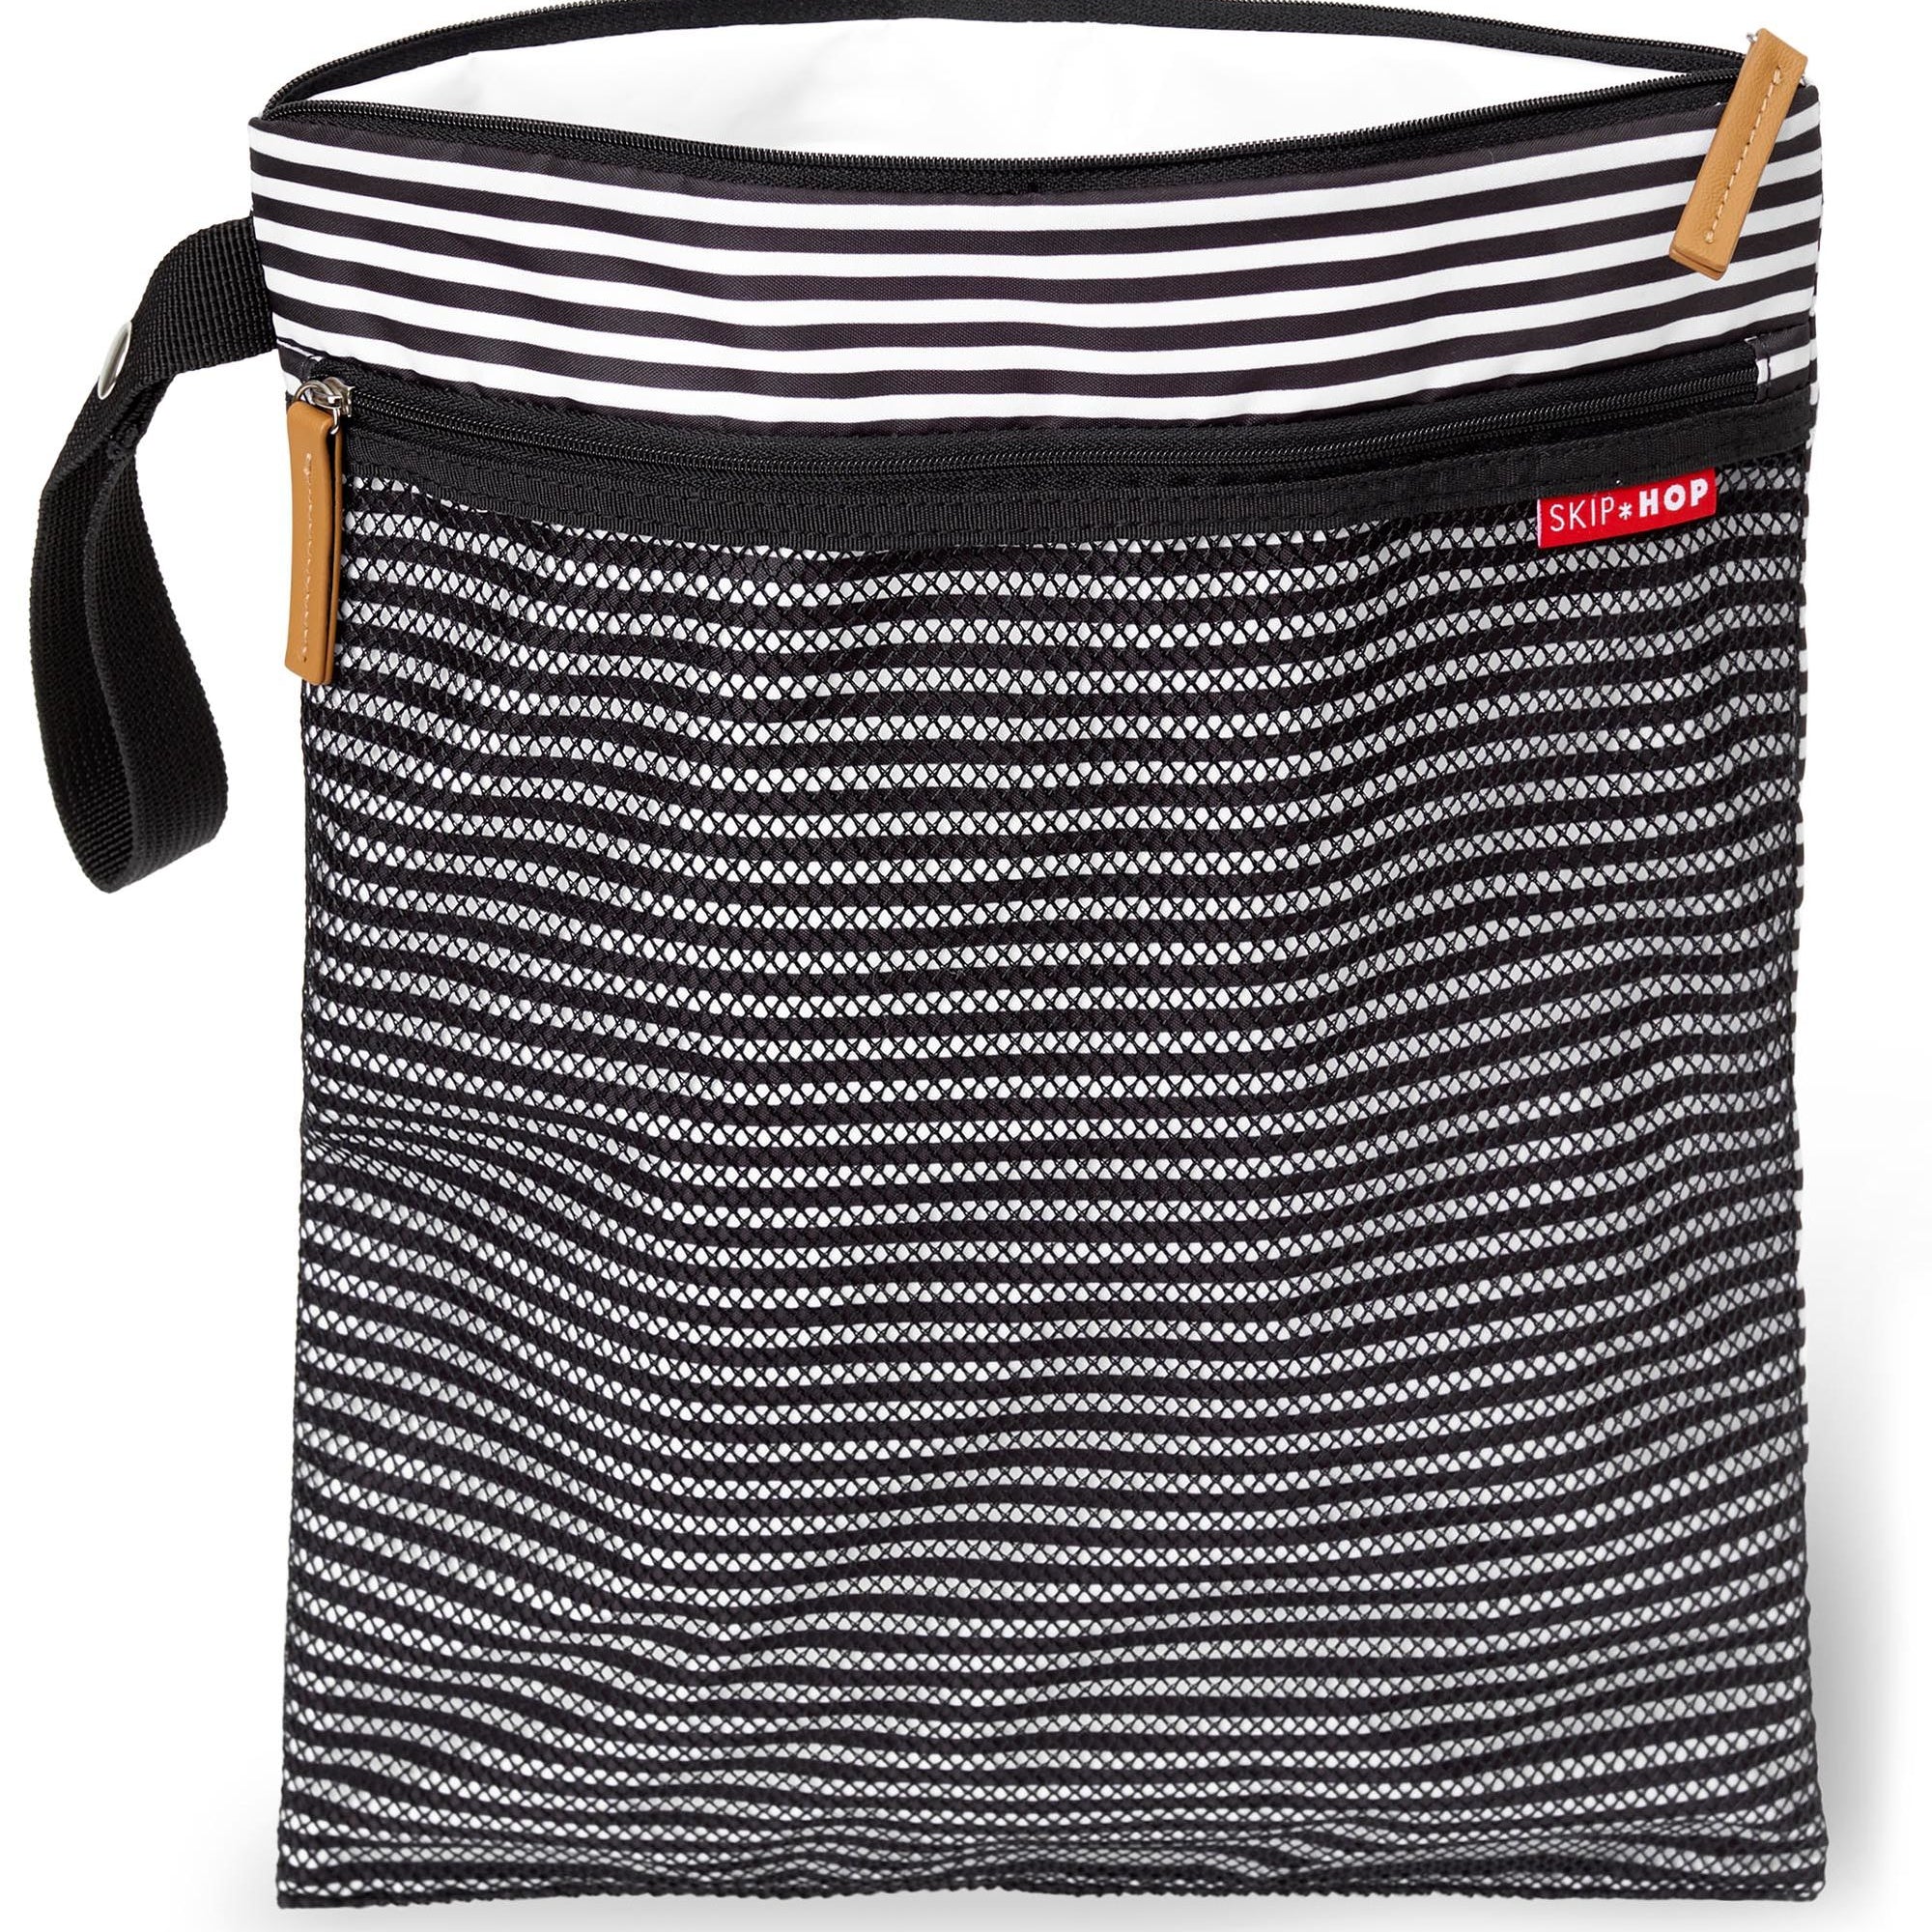 Grab & Go Wet/Dry Bag black white stripe